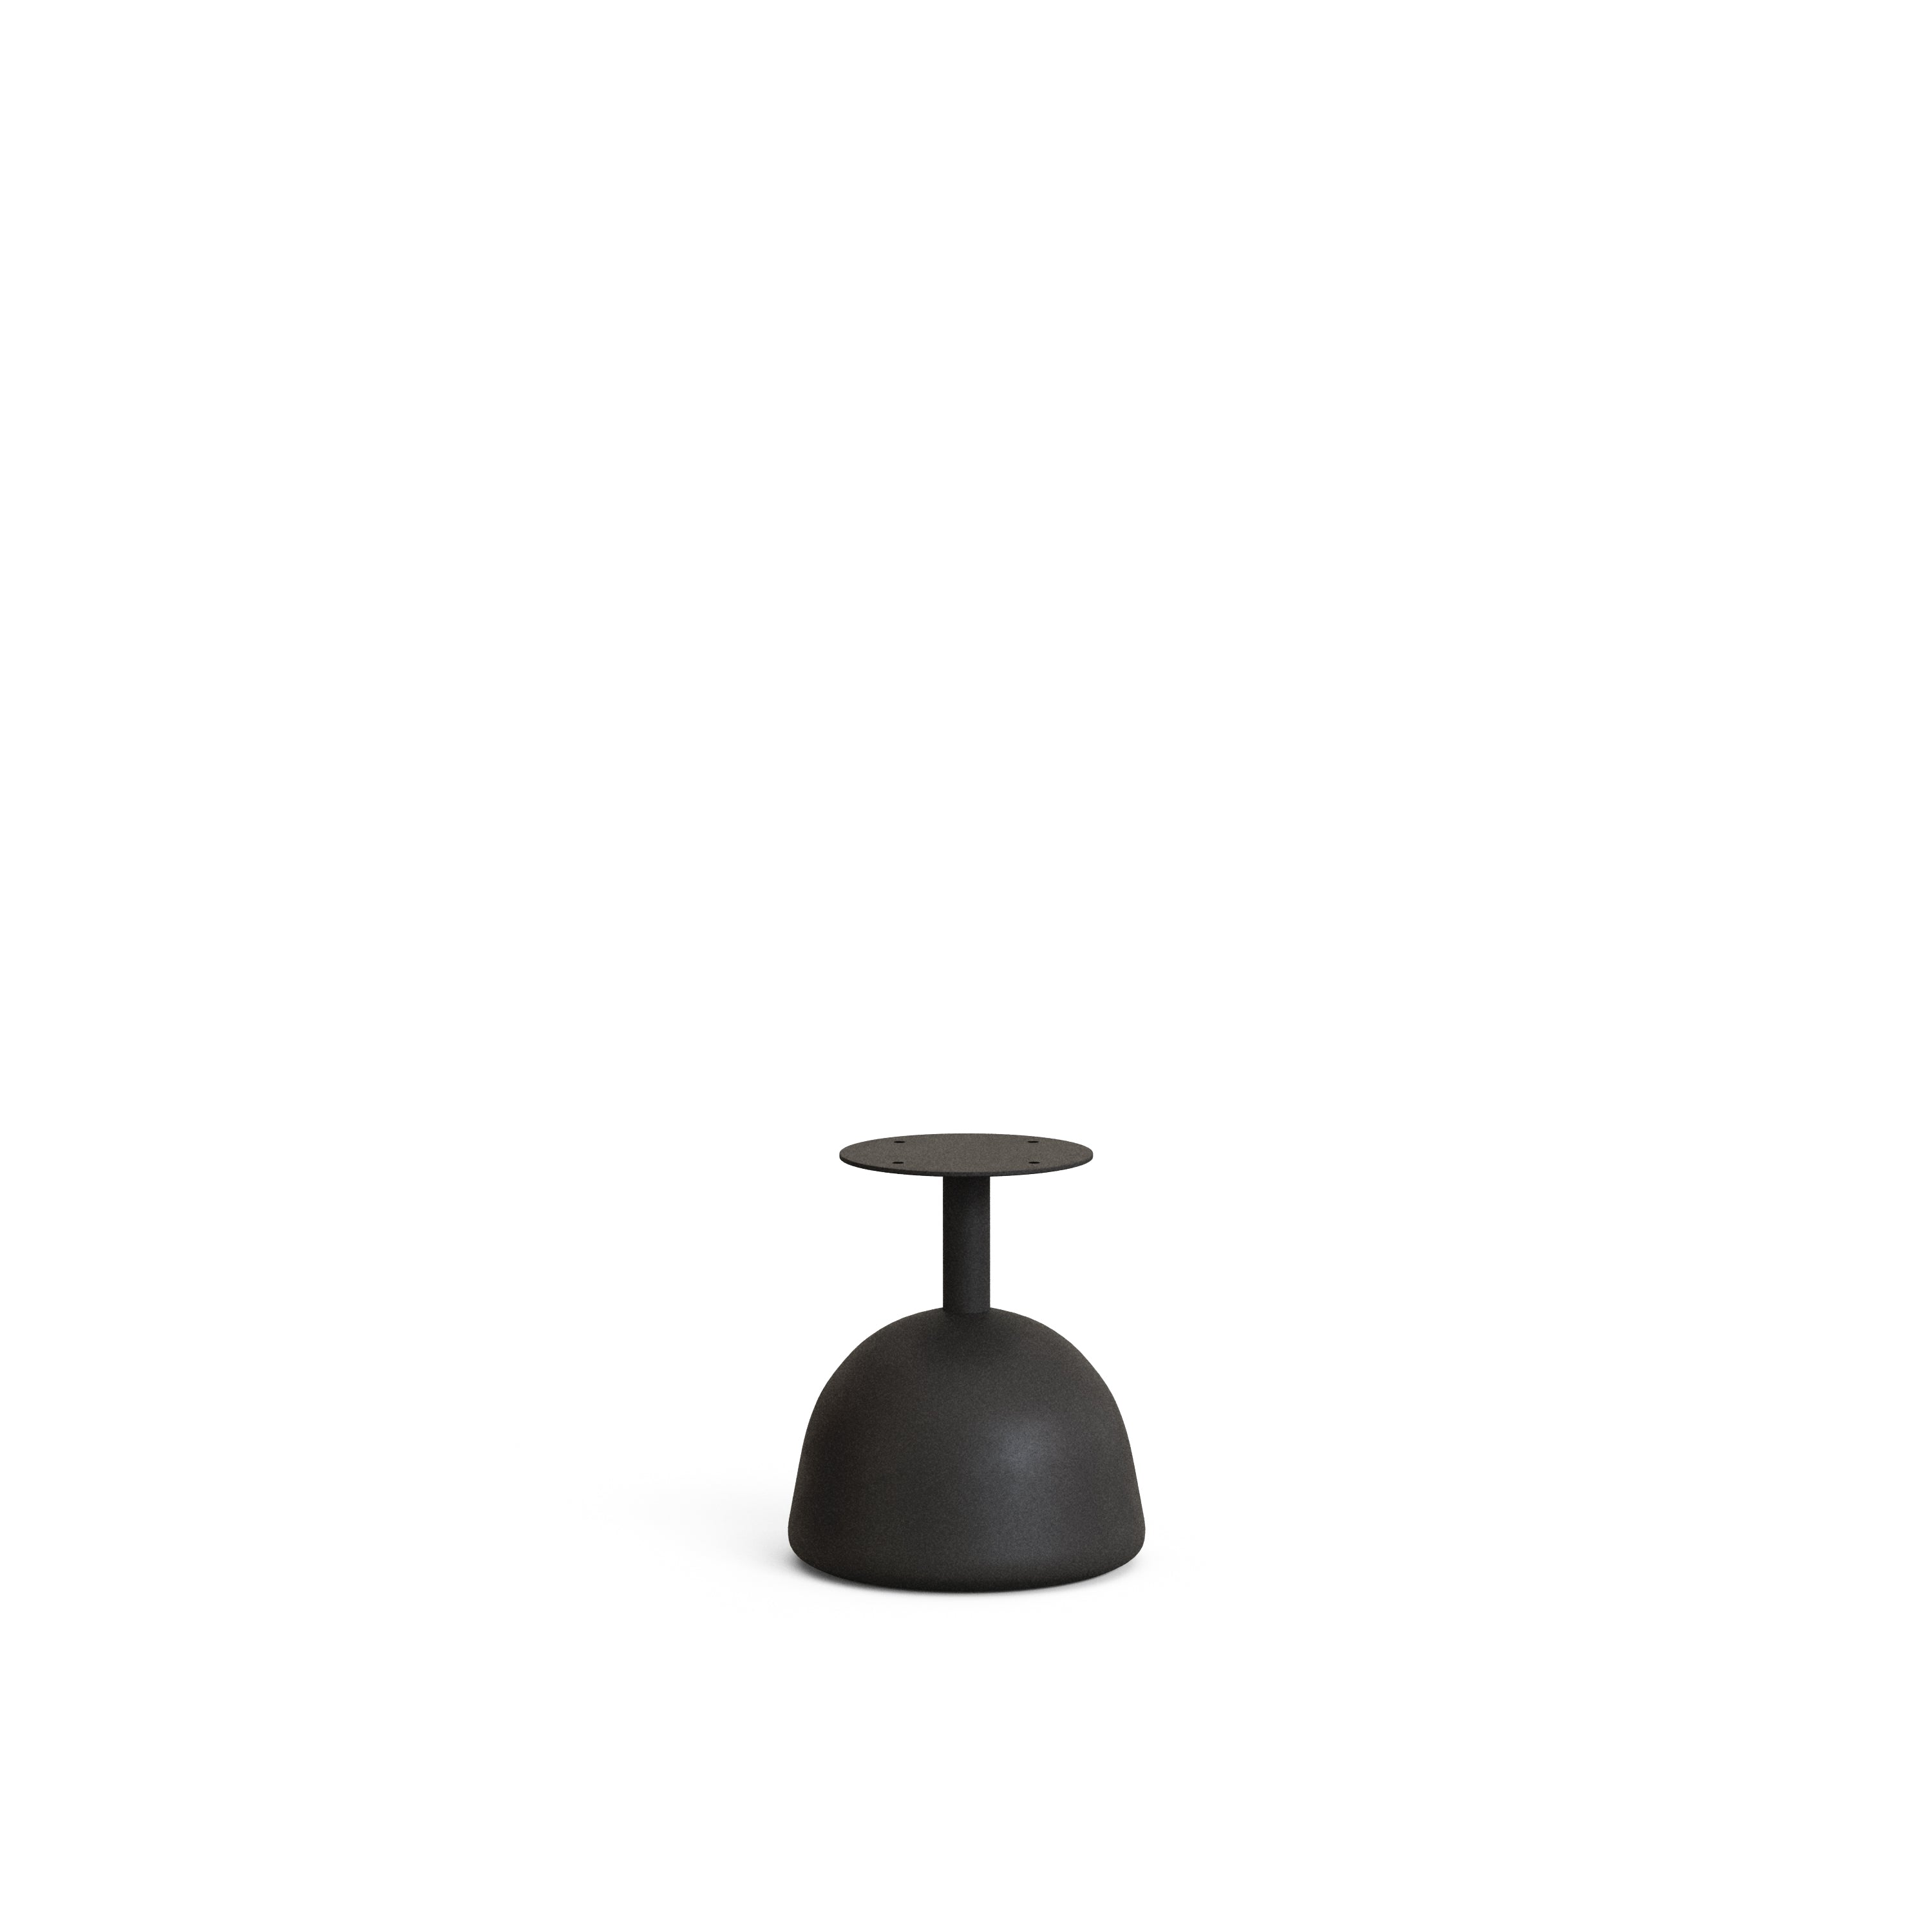 Saura kültéri asztalláb acélból, fekete festett befejezéssel Ø 28 x 32 cm